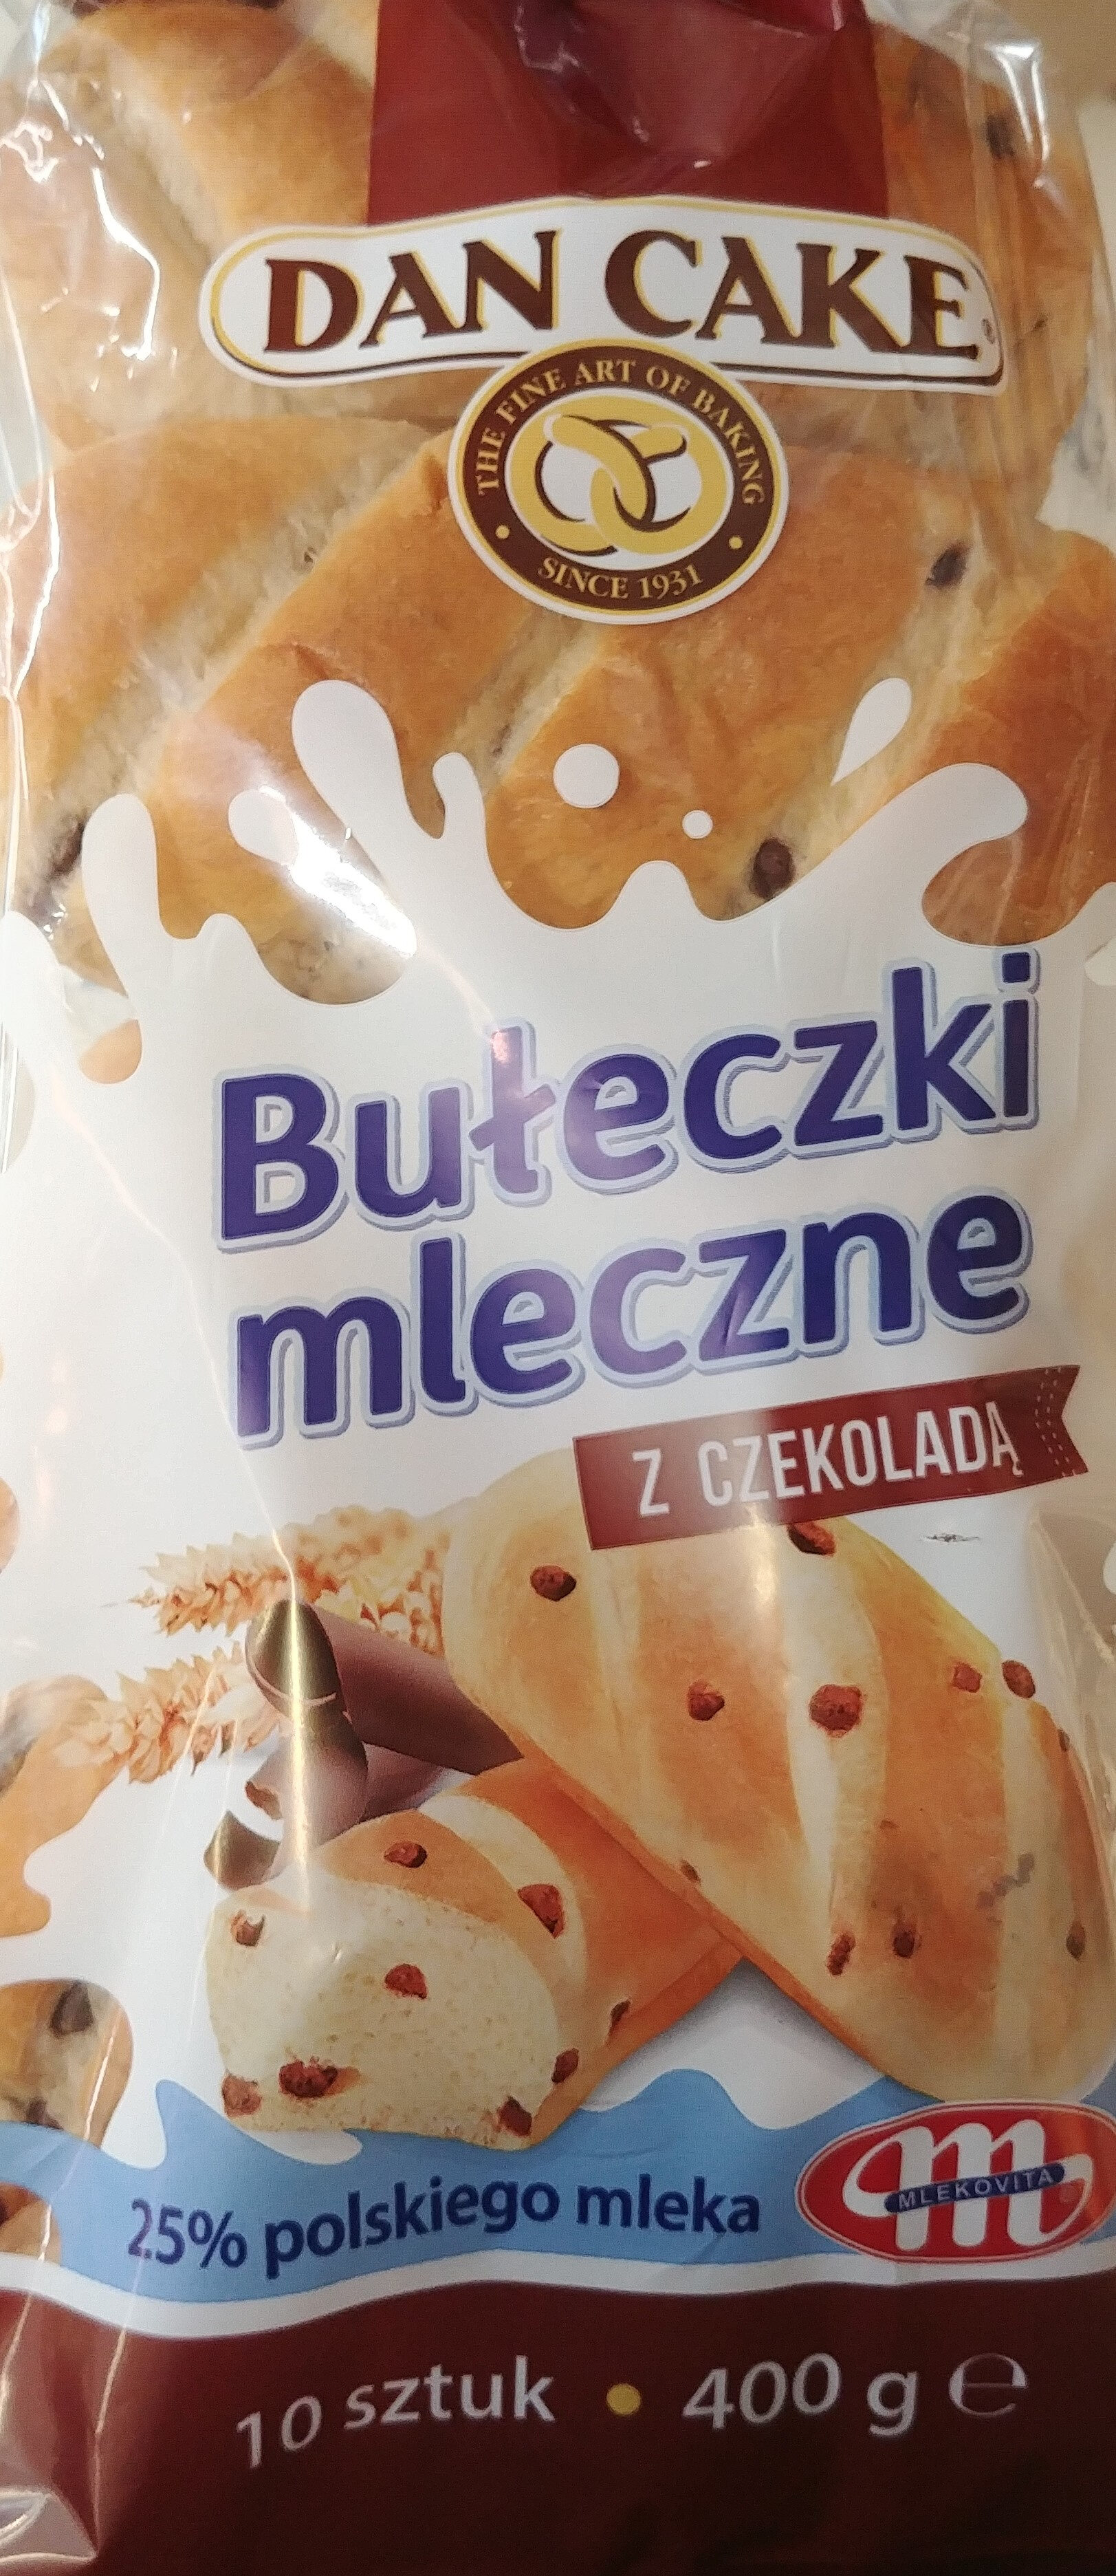 Bułeczki mleczne z czekoladą - Product - pl